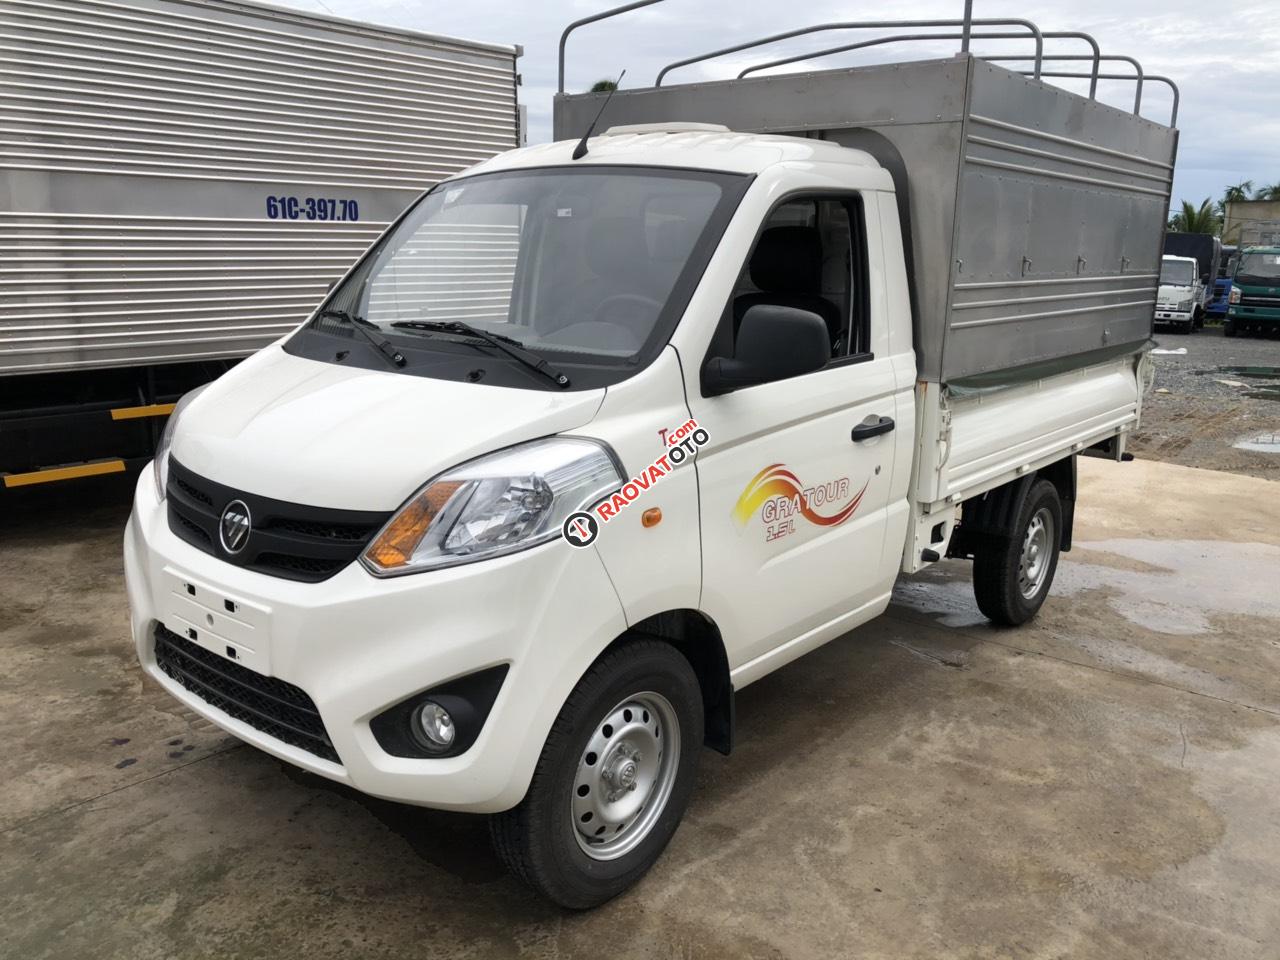 Bán xe tải Thaco Foton đời mới, chất lượng Suzuki 990kg-0